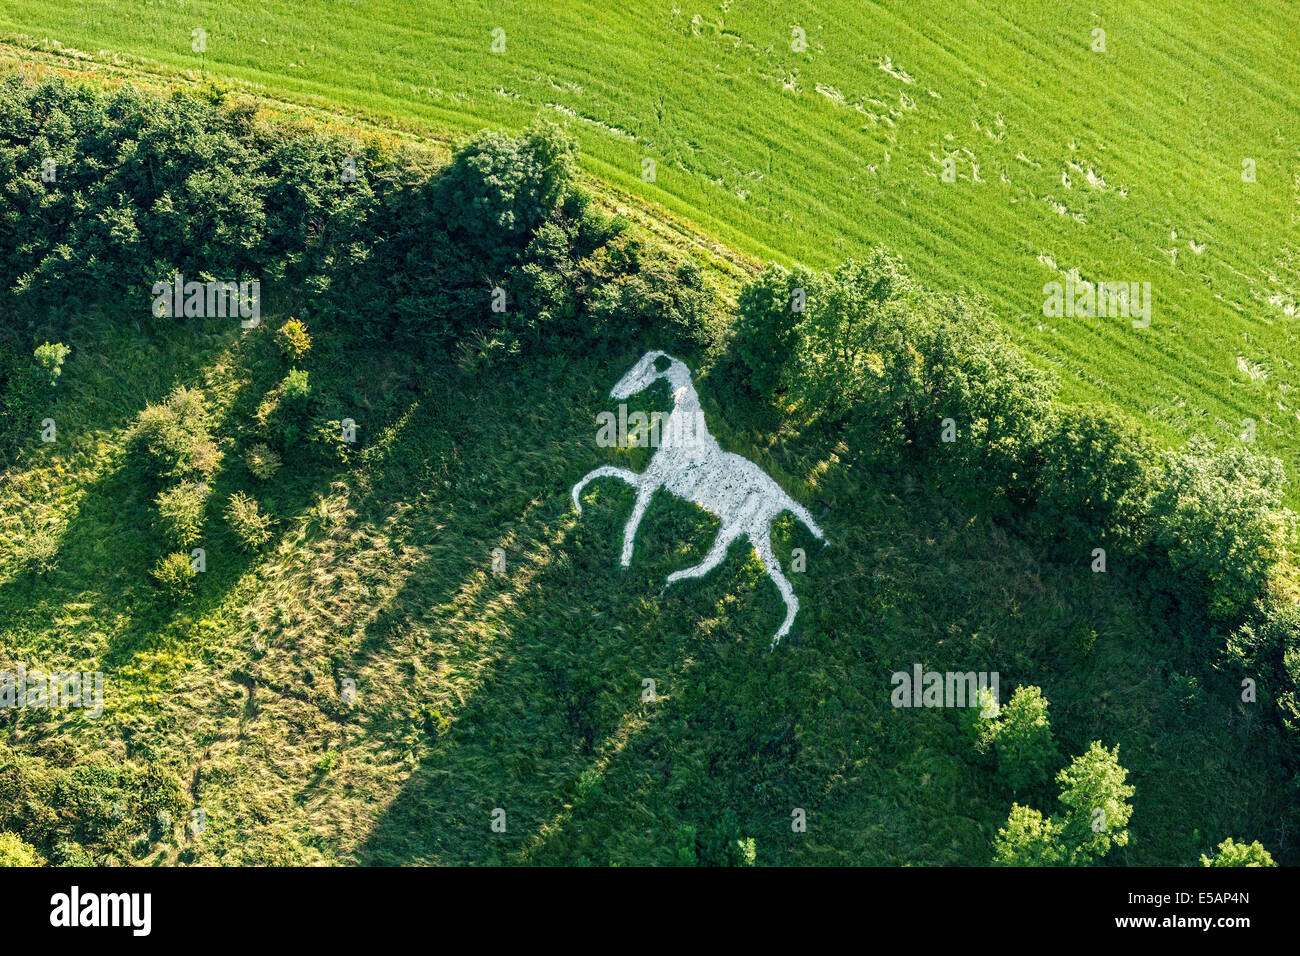 Vista aérea de la ciudad de White Horse en amplio o amplio Hinton, nr Royal Wootton Bassett, sur de Swindon, Wiltshire, Inglaterra. JMH6173 Foto de stock